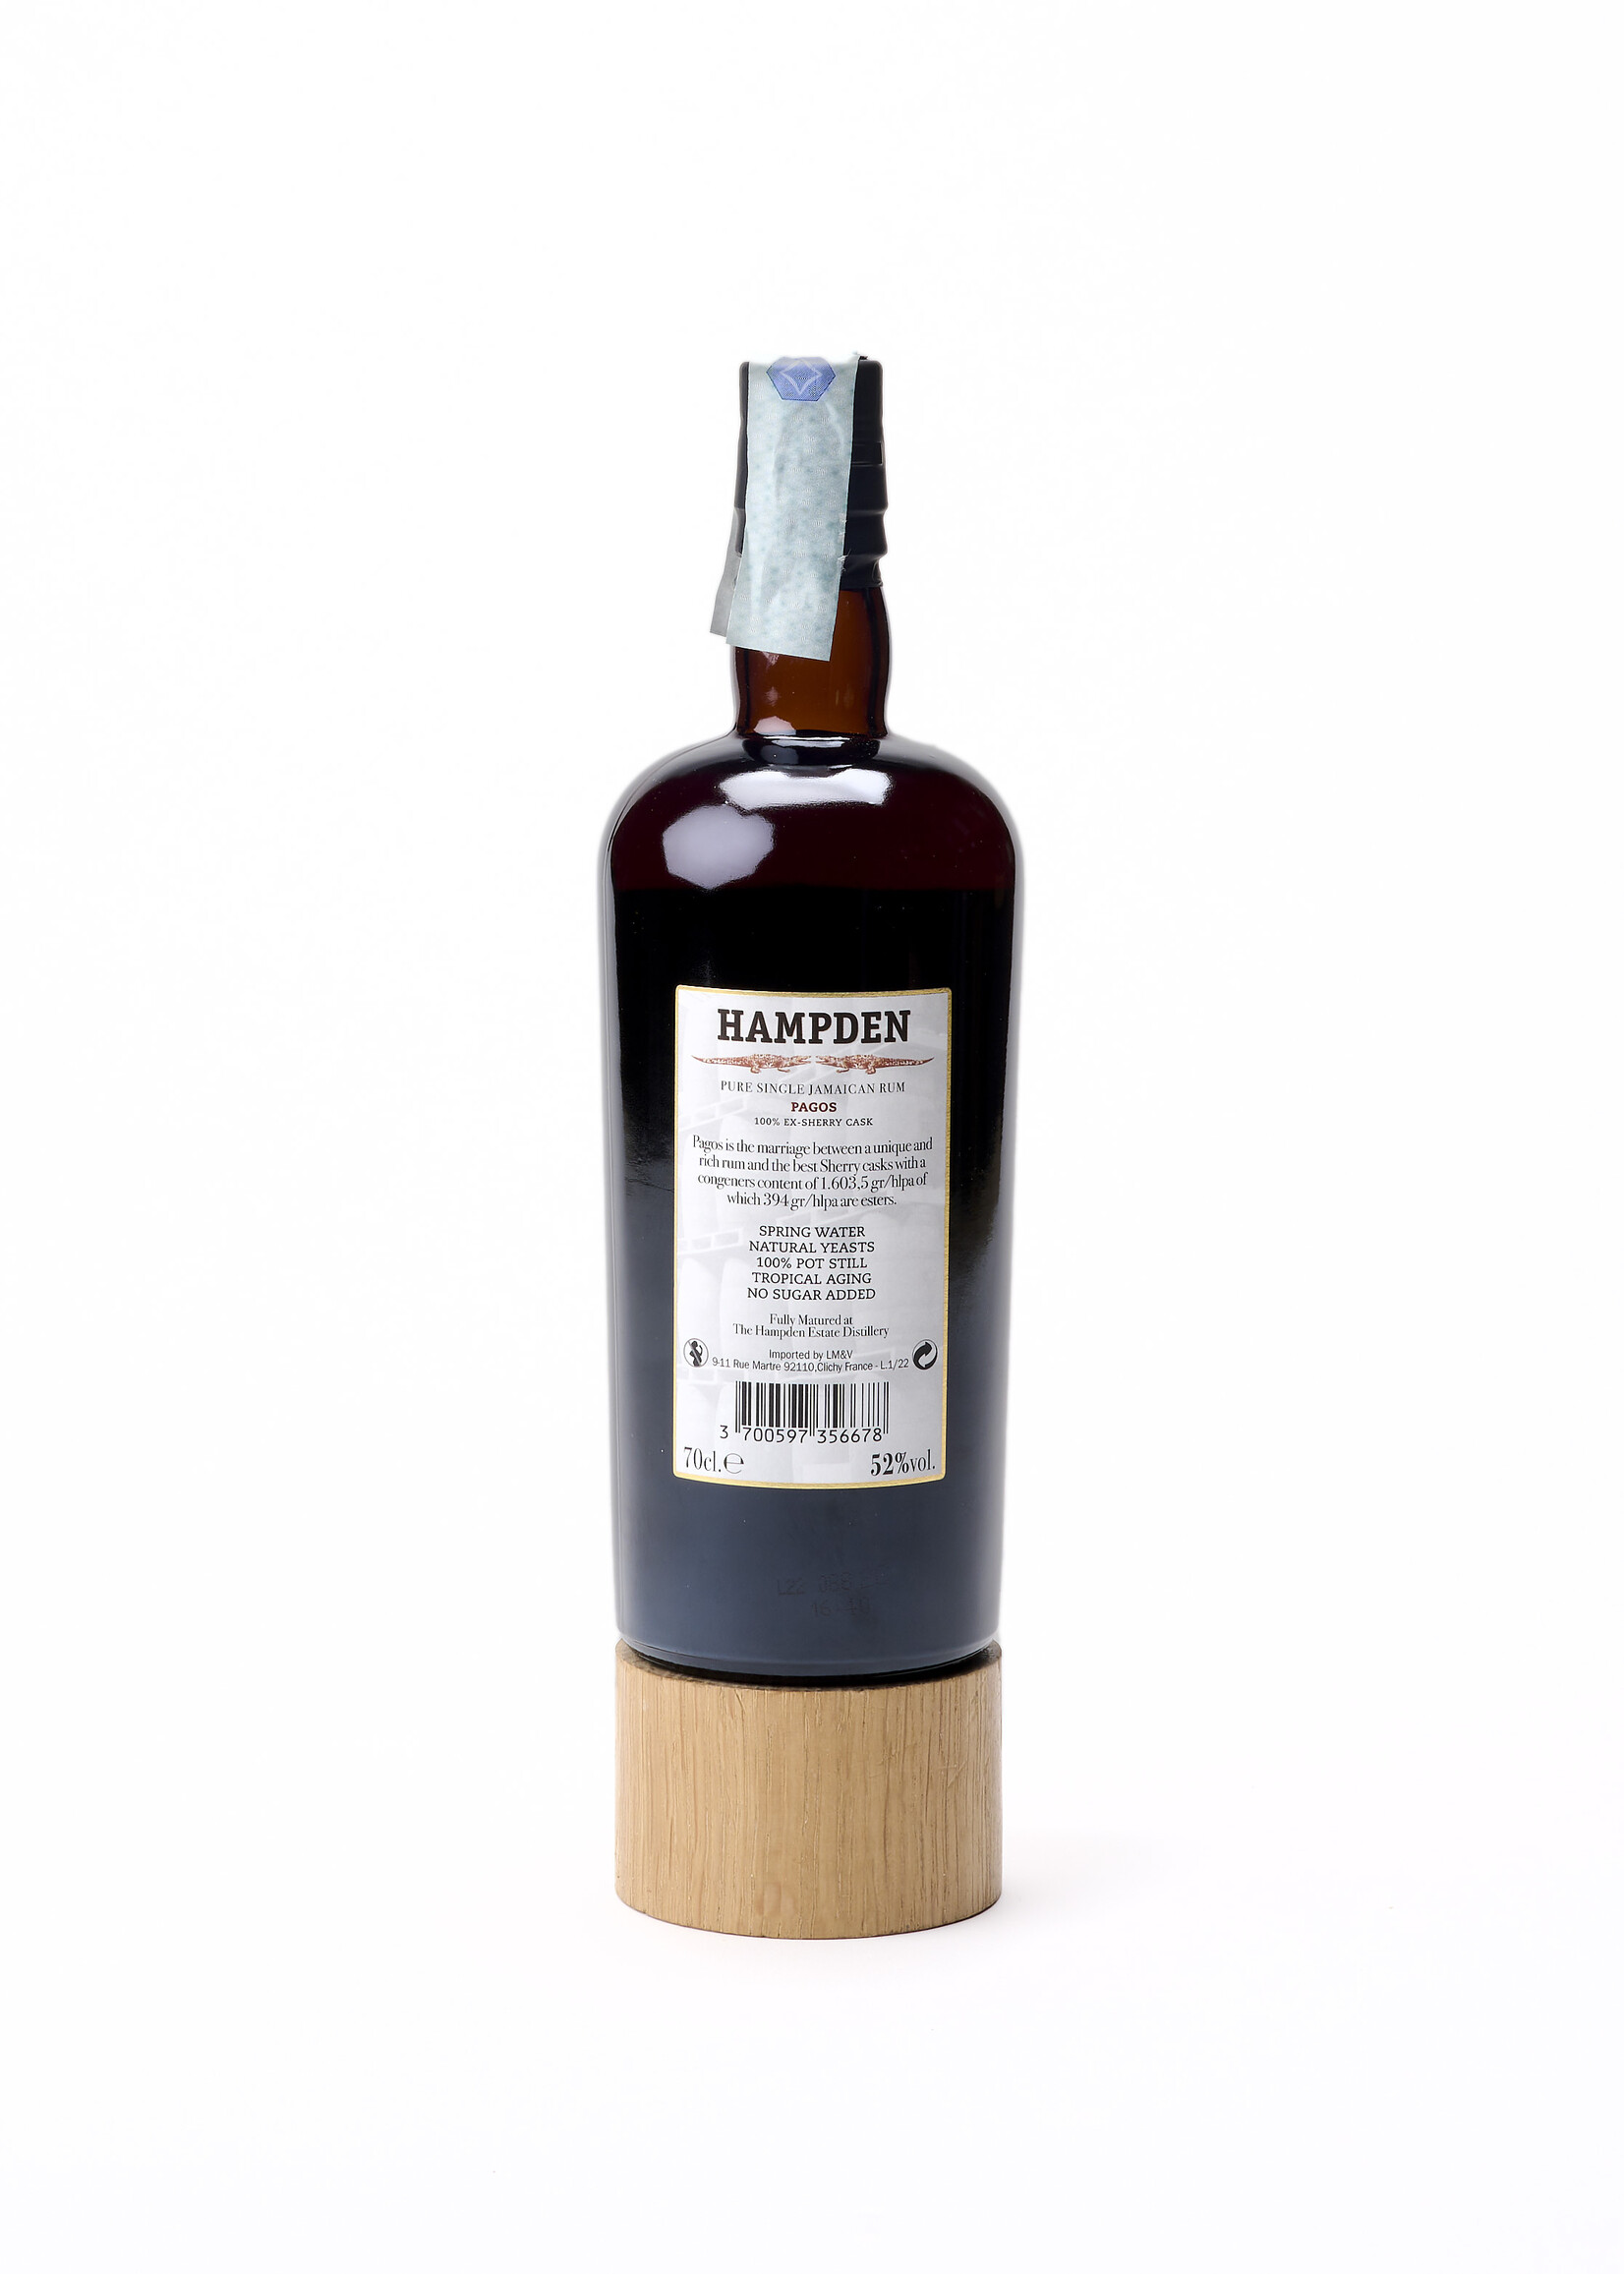 Hampden Estate Hampden Estate Pure Single Jamaican Rum Hampden Pagos 100% Ex-Sherry Case (52%) 70cl